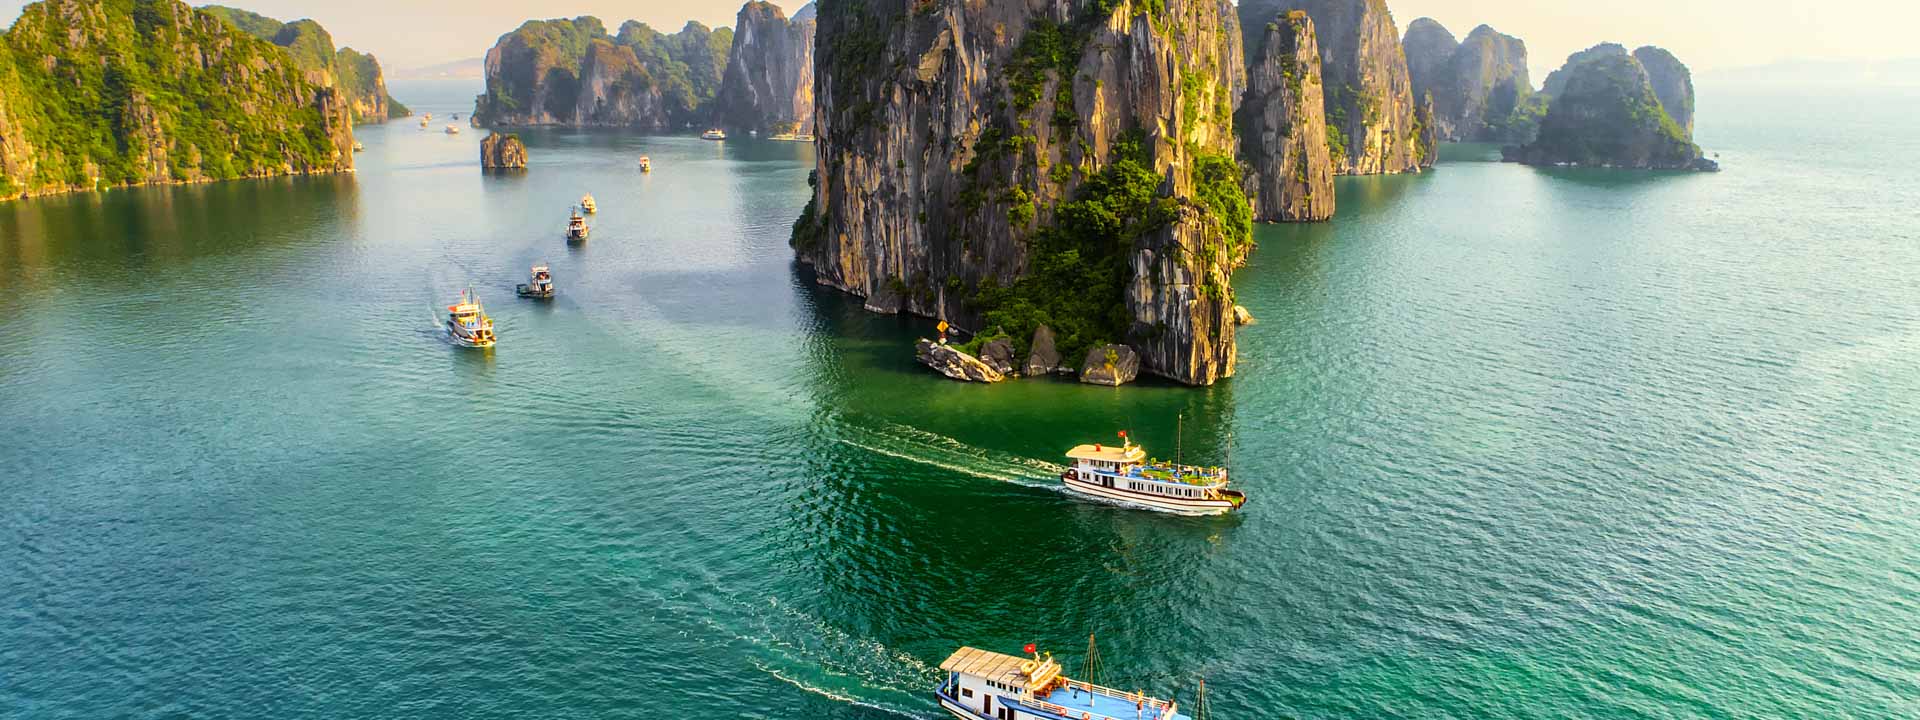 Northern Vietnam Luxury Adventure Tour 8 days